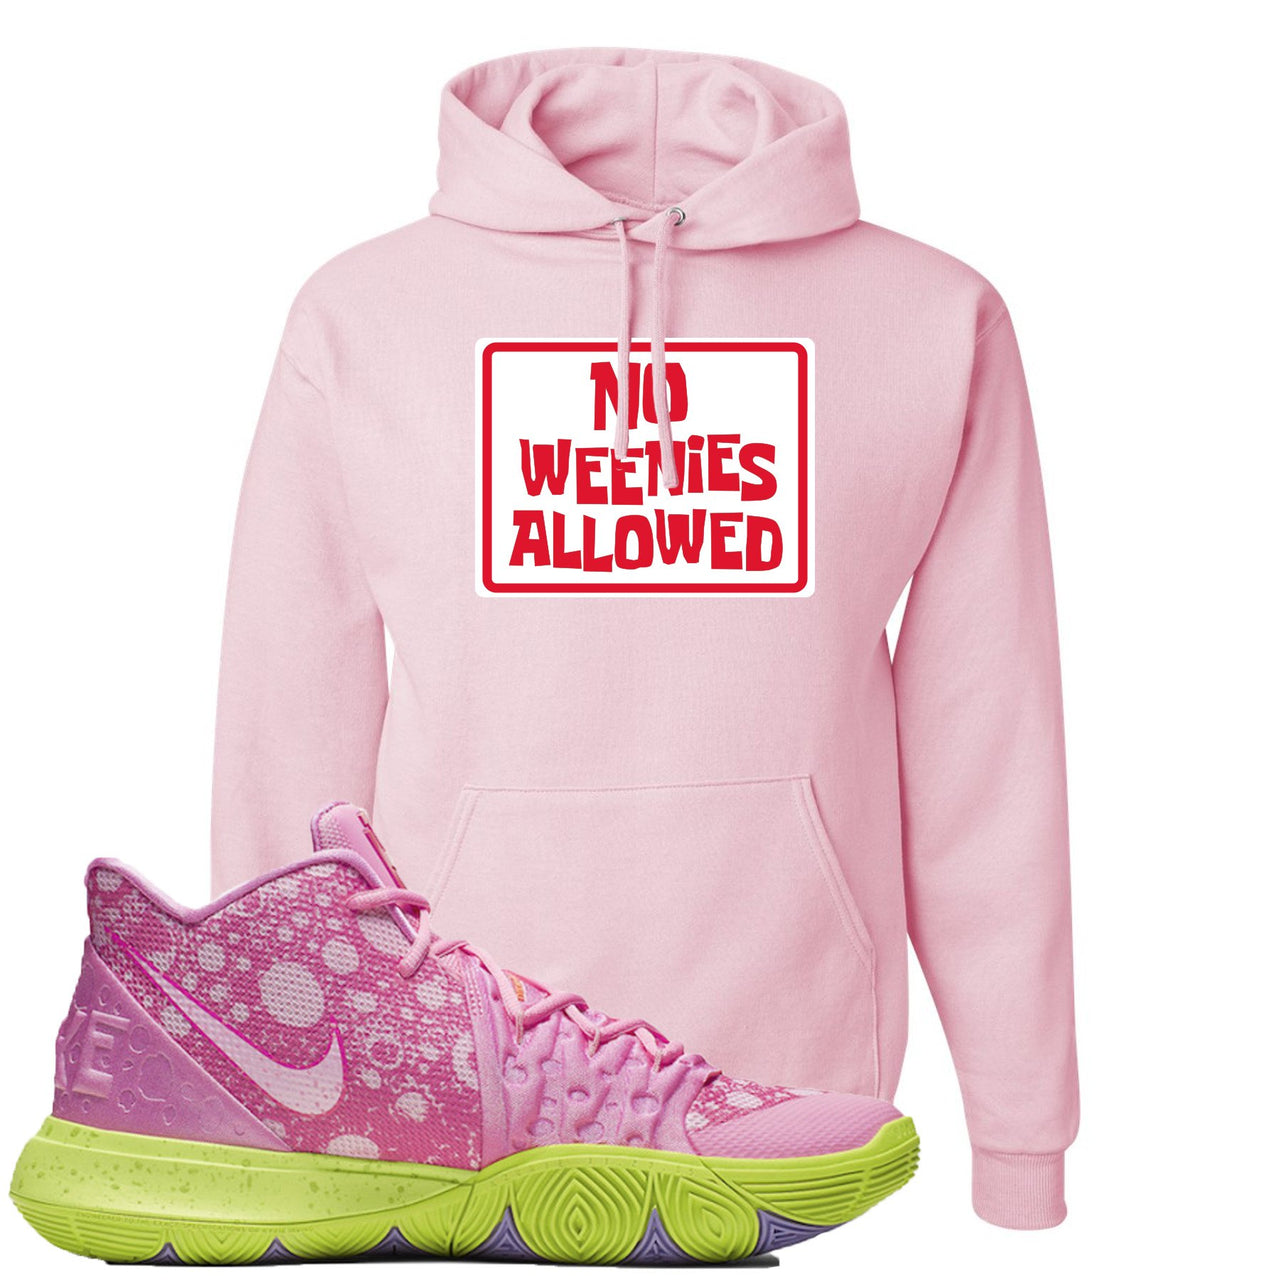 Patrick K5s Hoodie | No Weenies Allowed, Light Pink